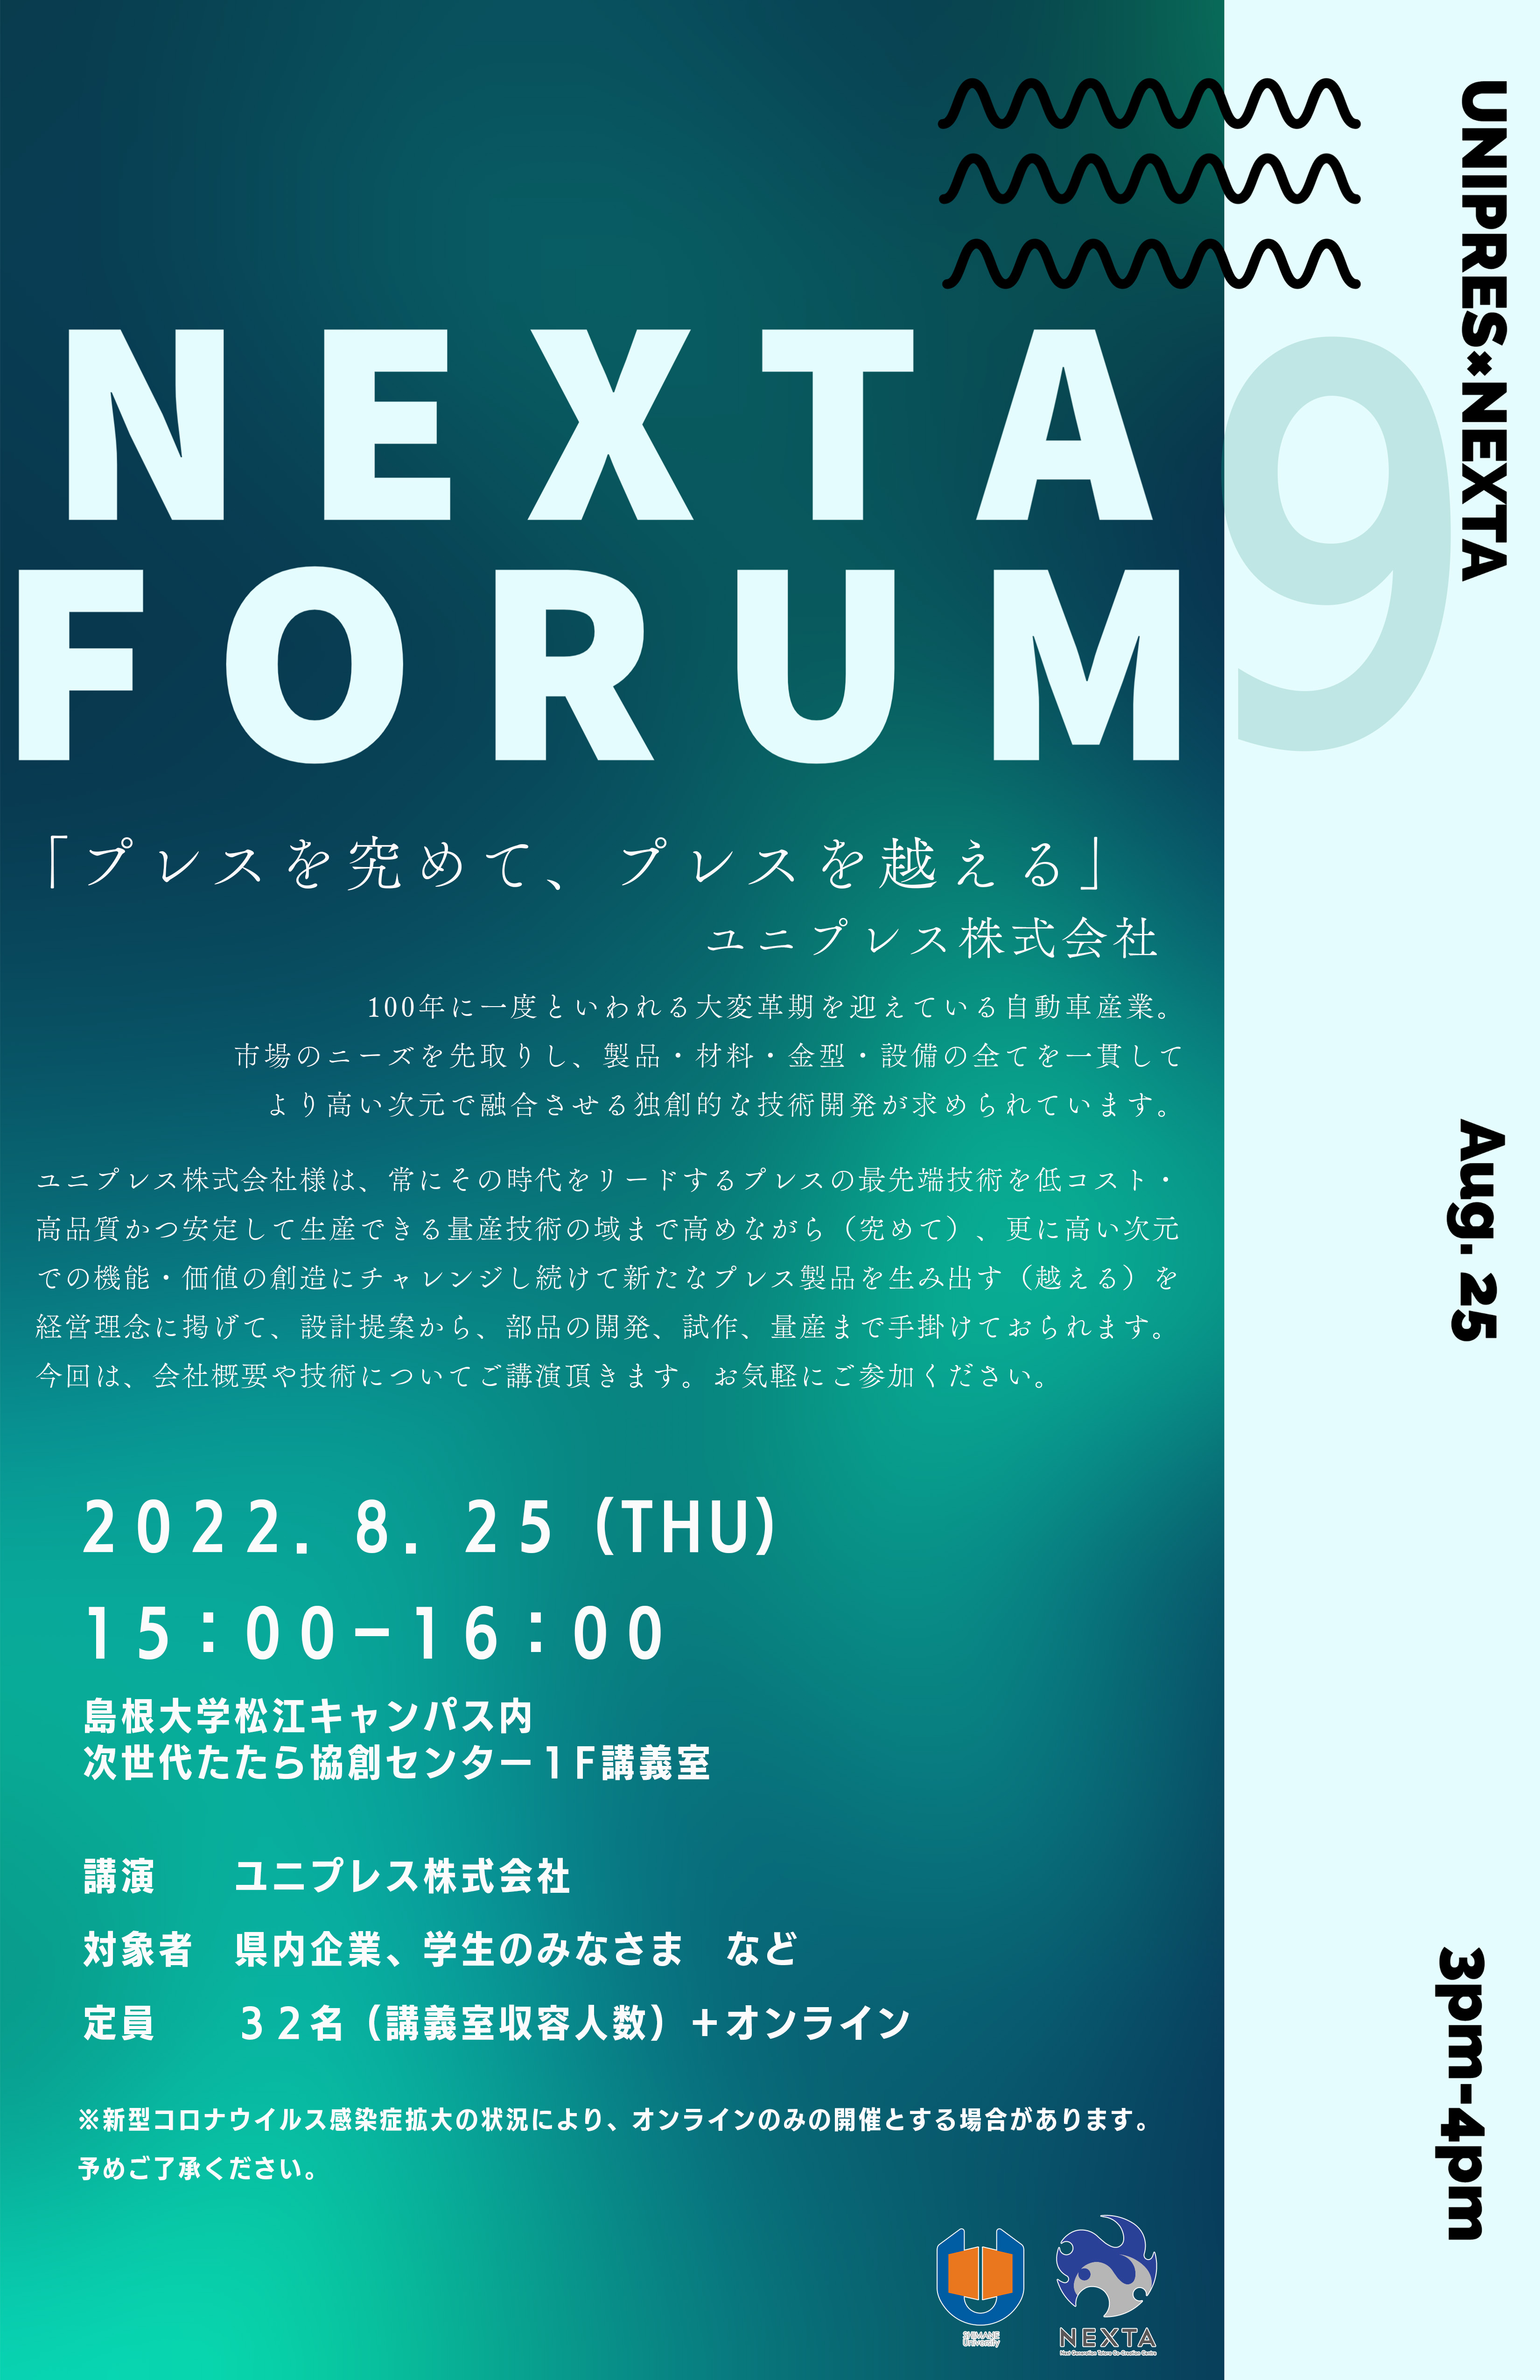 9th_NEXTA Forum